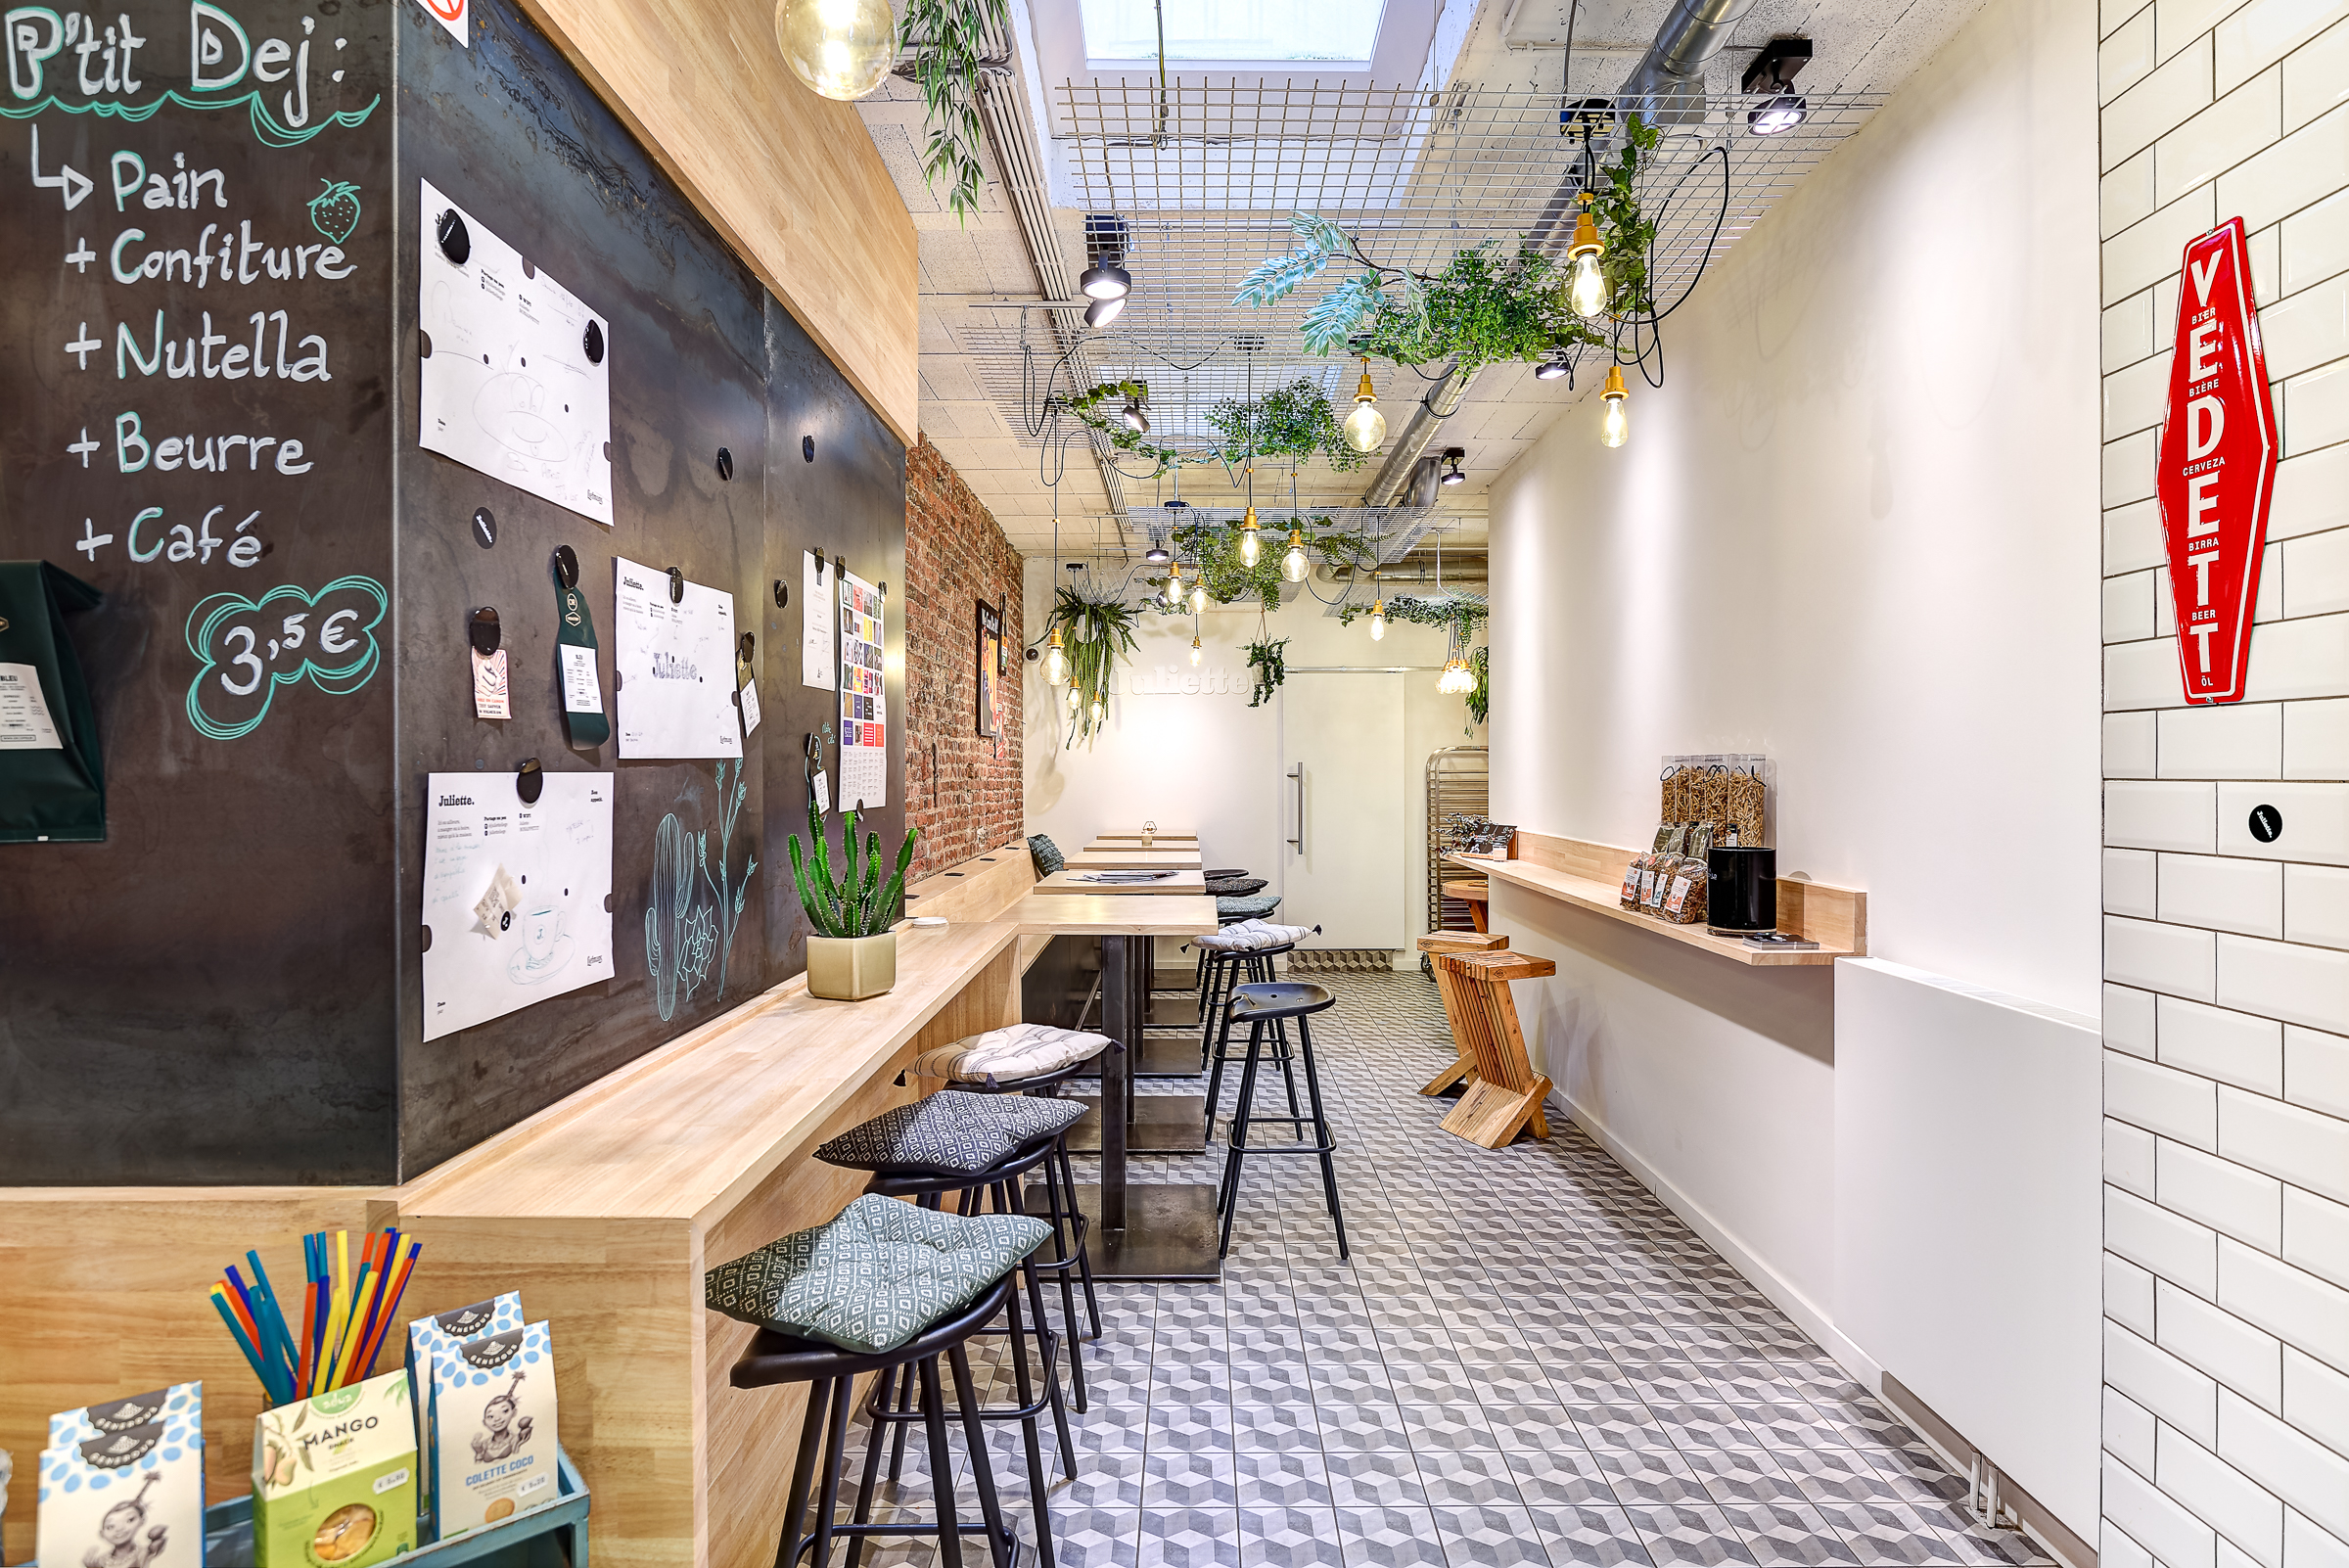 Architecte d’intérieur basé à Liège, spécialisé dans la conception et l'agencement de restaurants, magasins et autres espaces professionnels.